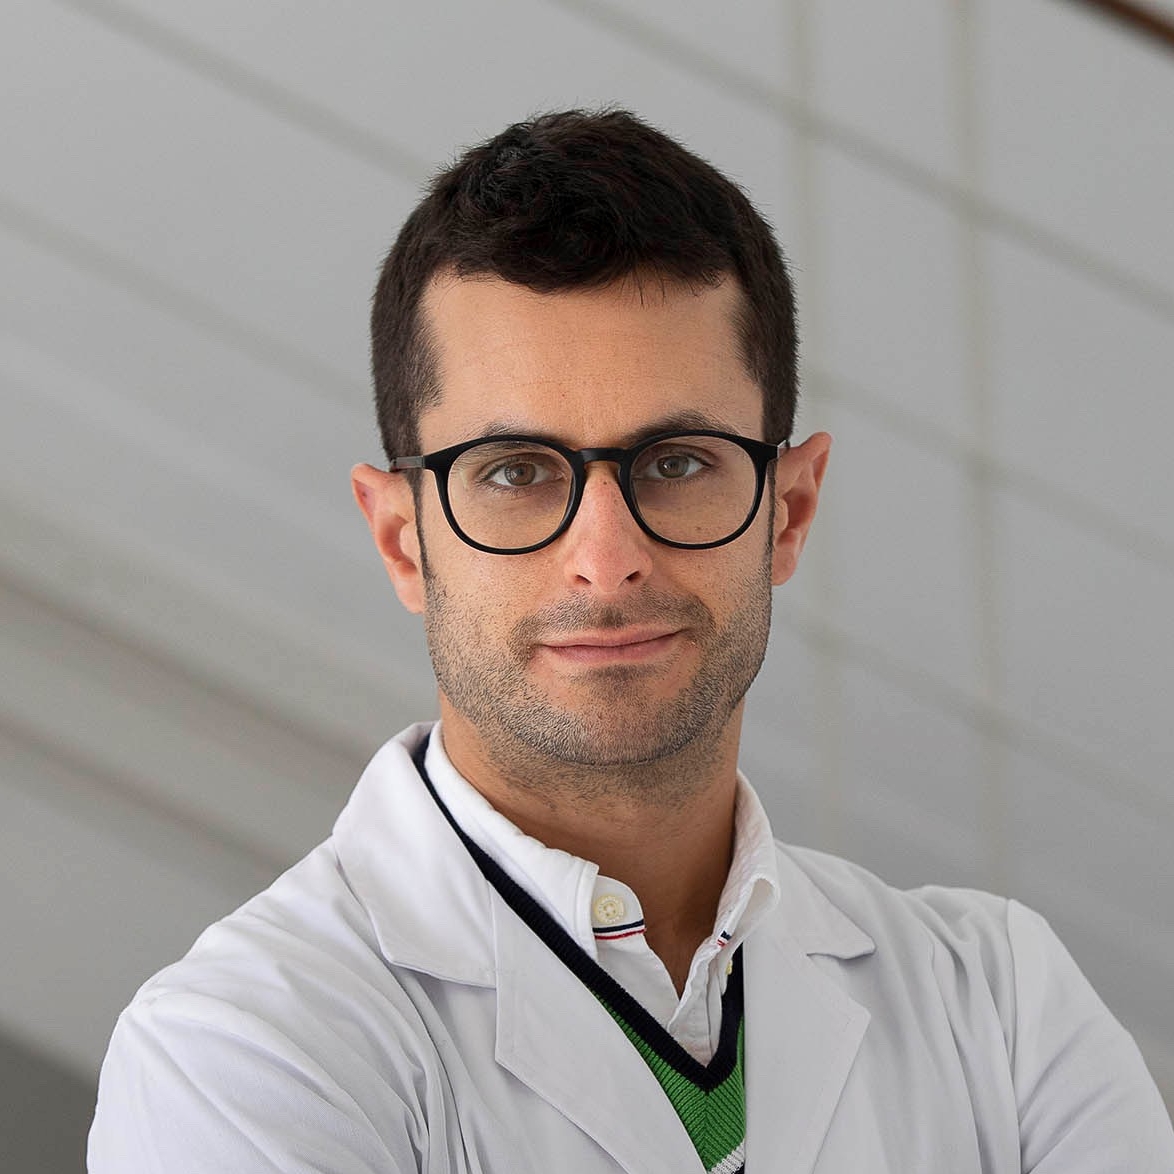 Nestor Ventura-Abreu, MD, PhD, FEBO